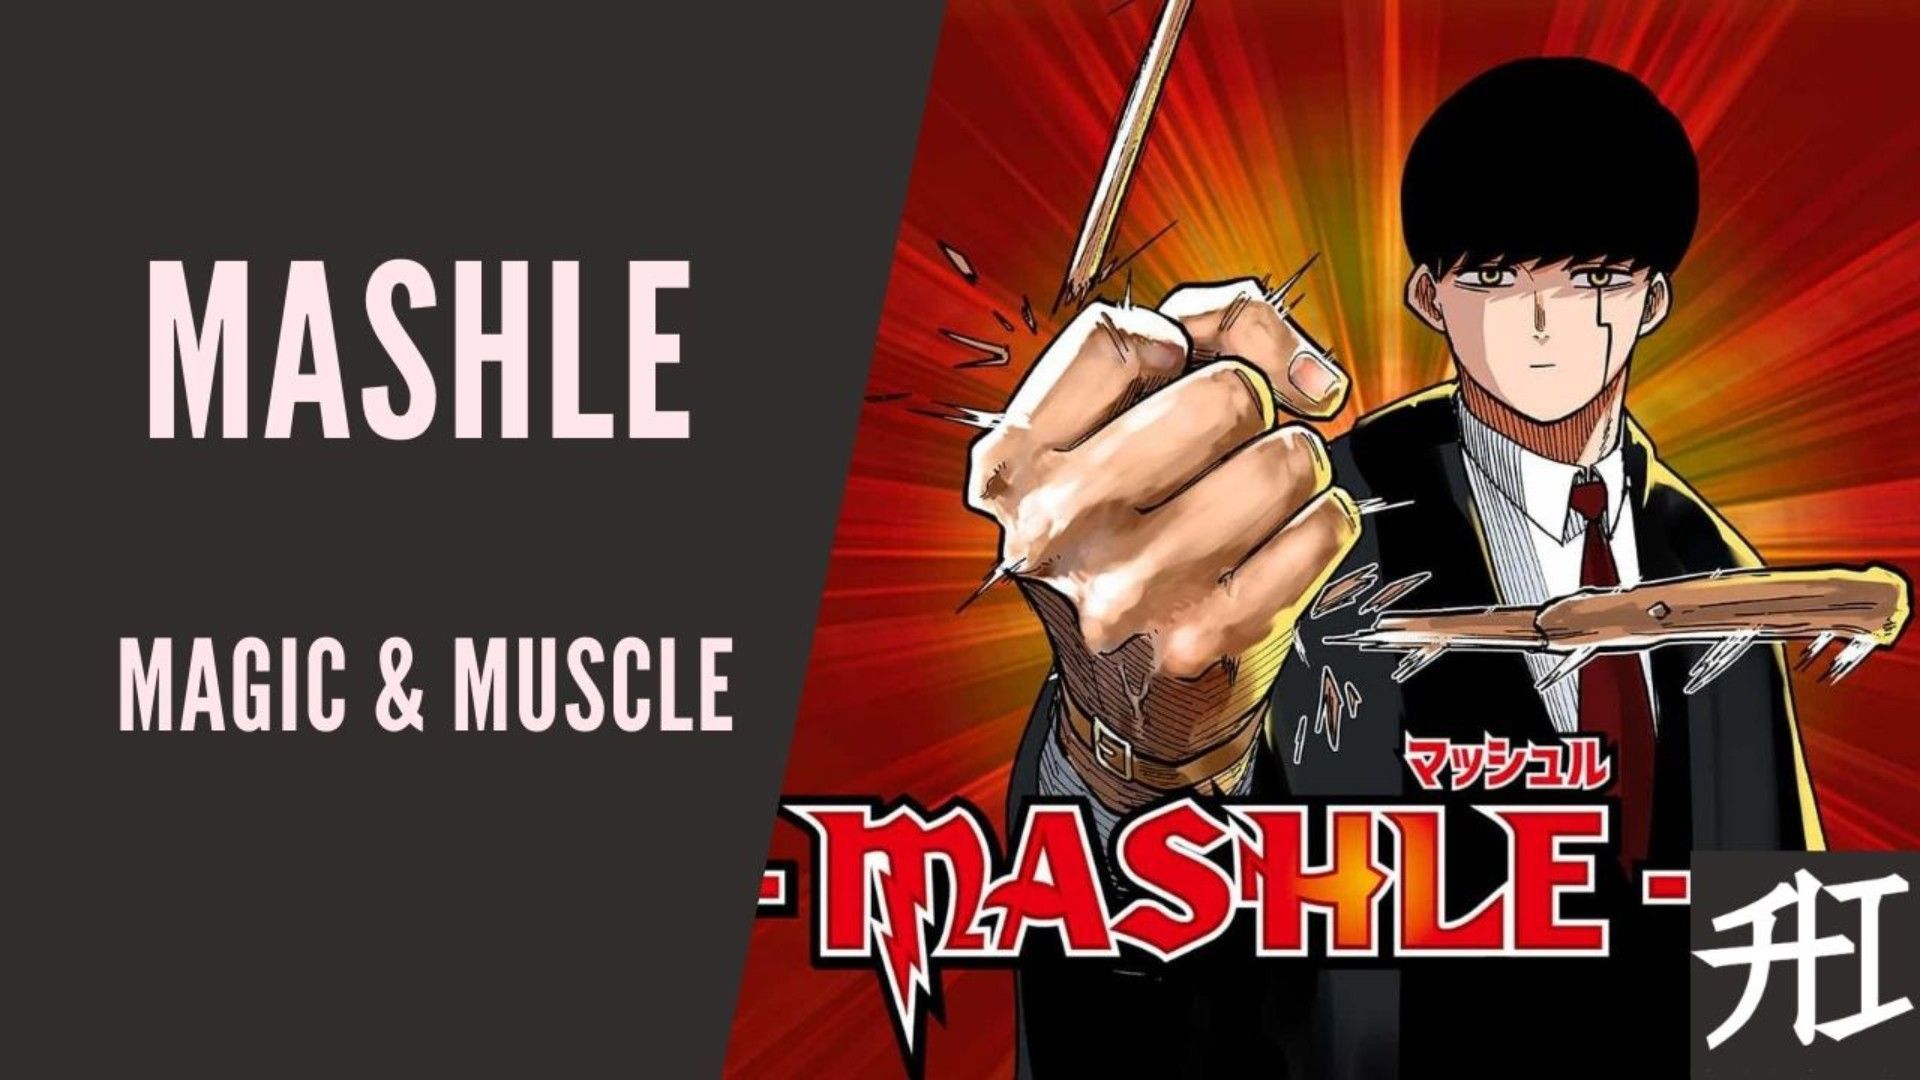 Mashle Episode 7  AngryAnimeBitches Anime Blog